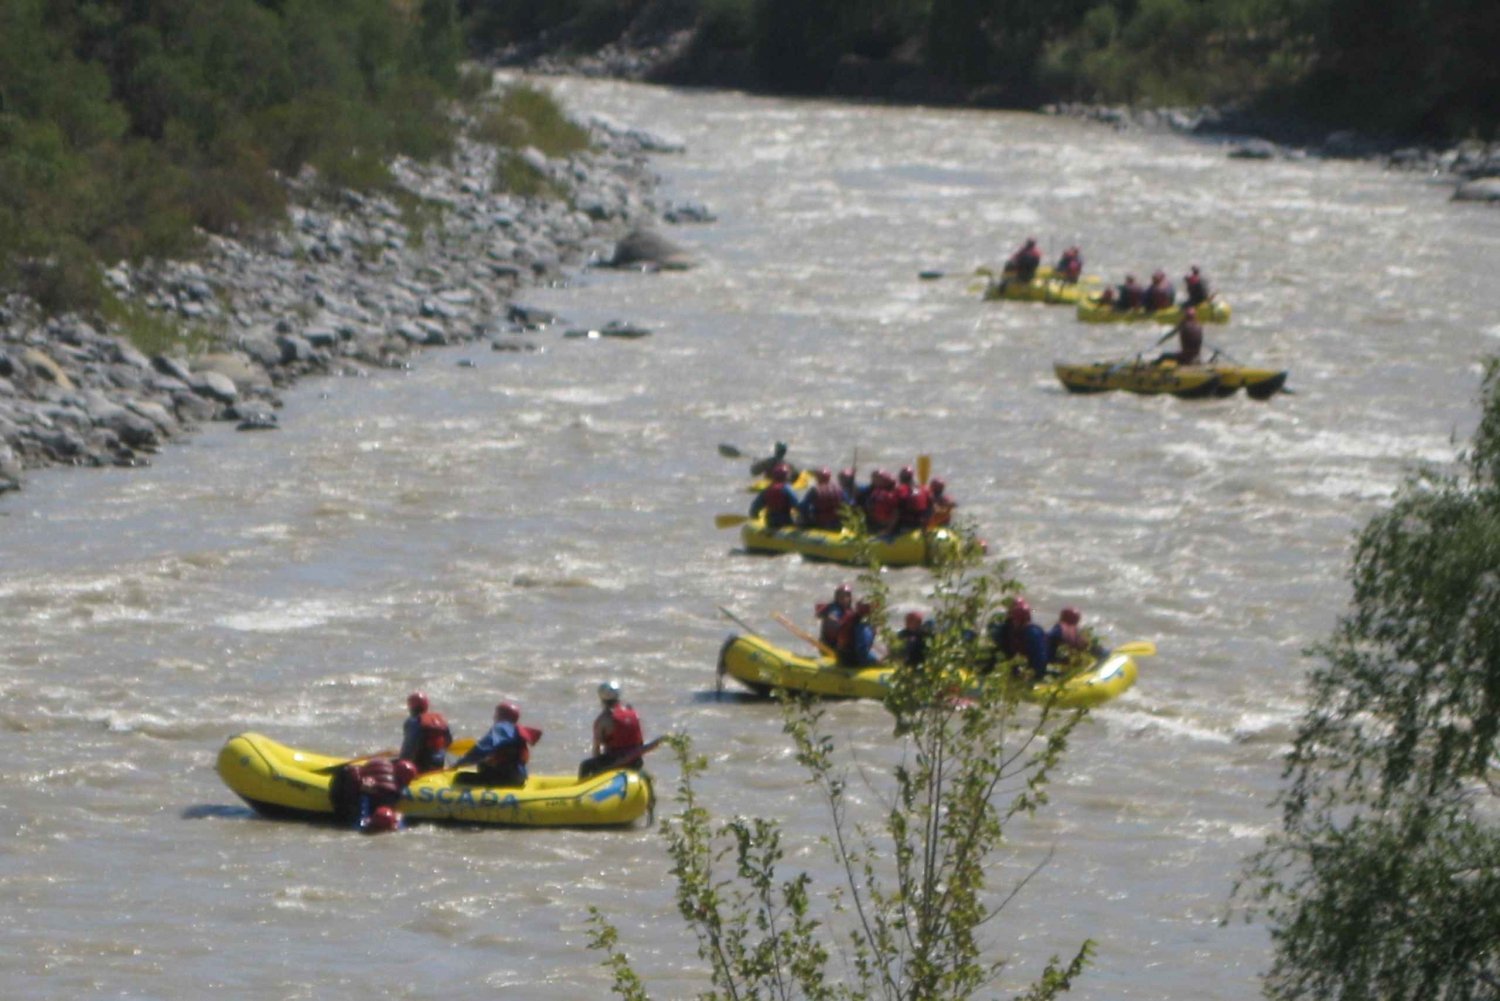 Ride & Raft: Aventura en la Cordillera y el Río Maipo